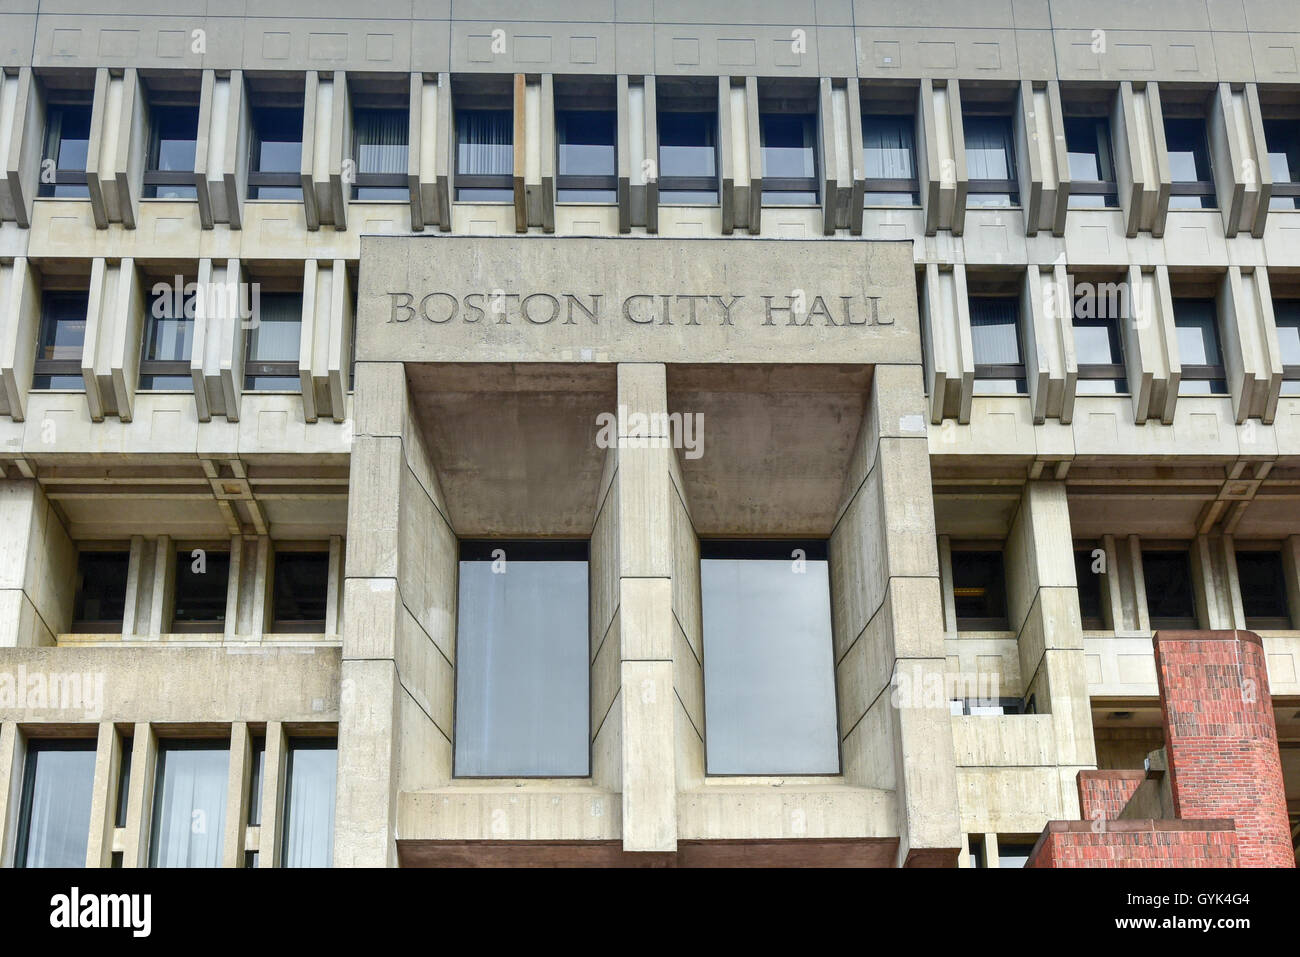 Boston City Hall in Regierungszentrum. Die aktuellen Halle wurde 1968 gebaut und ist ein umstrittenes und prominente Beispiel für die br Stockfoto